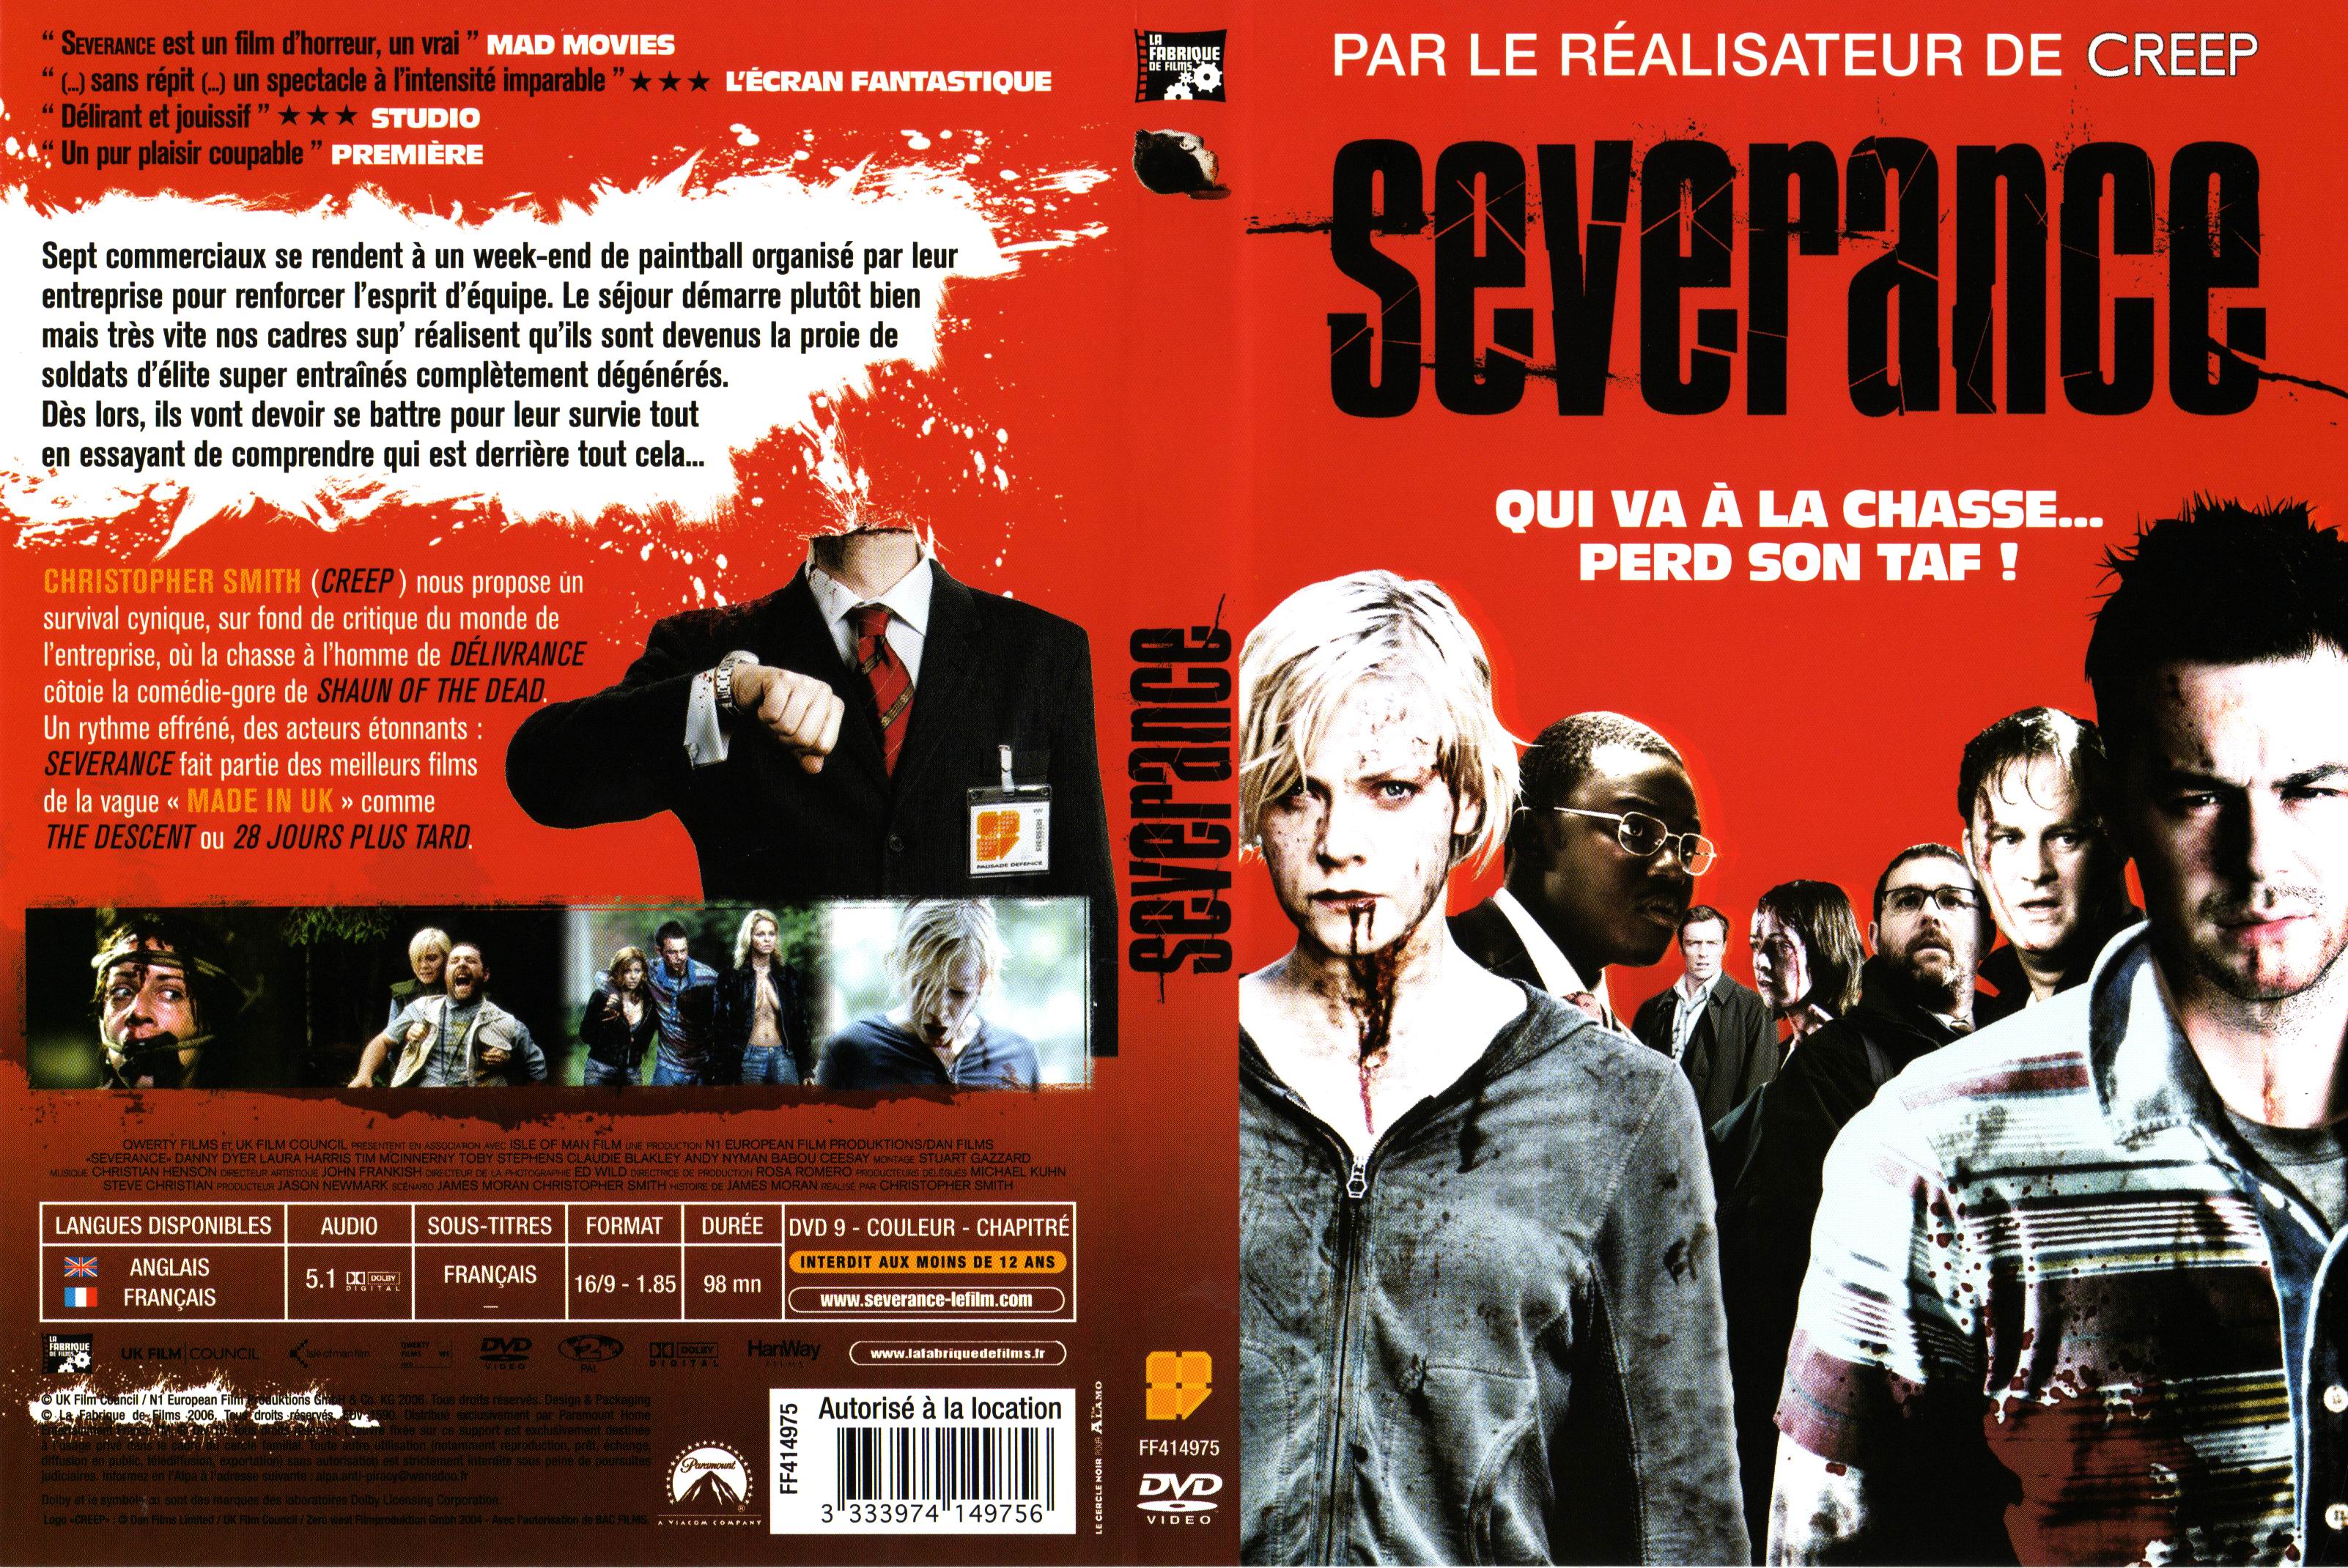 Jaquette DVD Severance v2